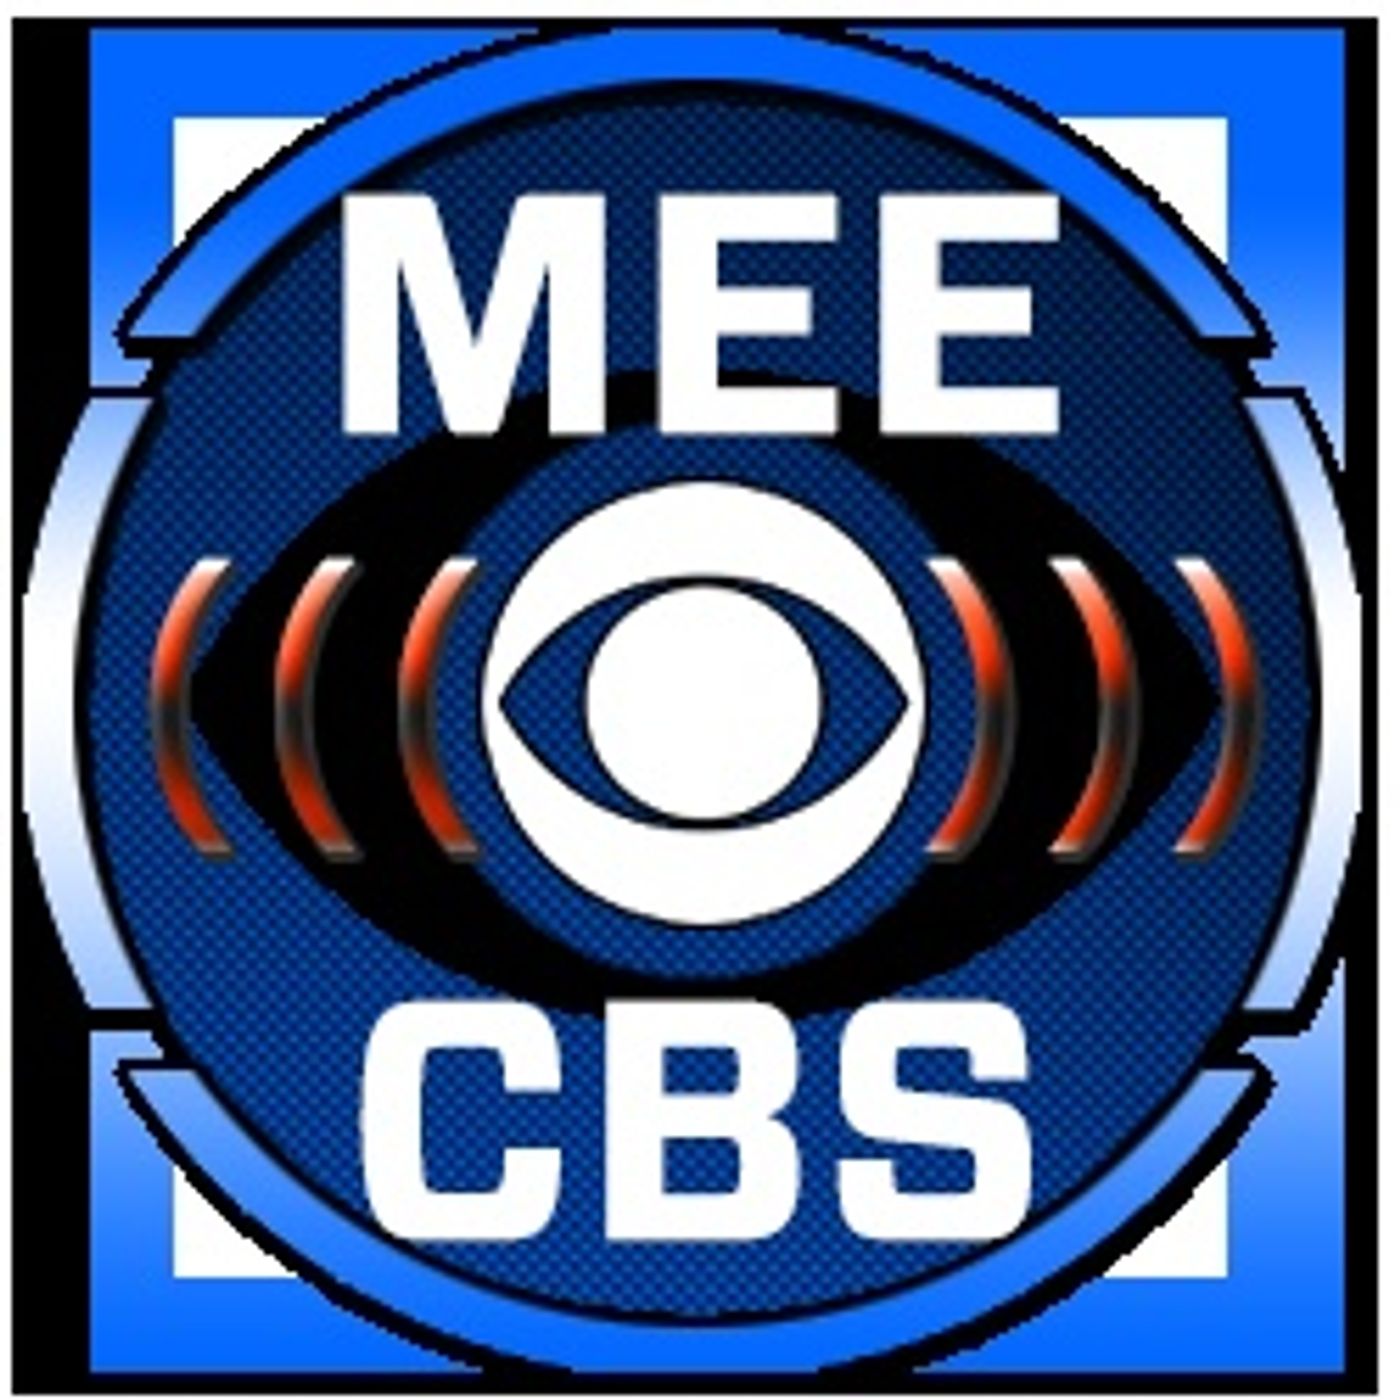 MEE on CBS